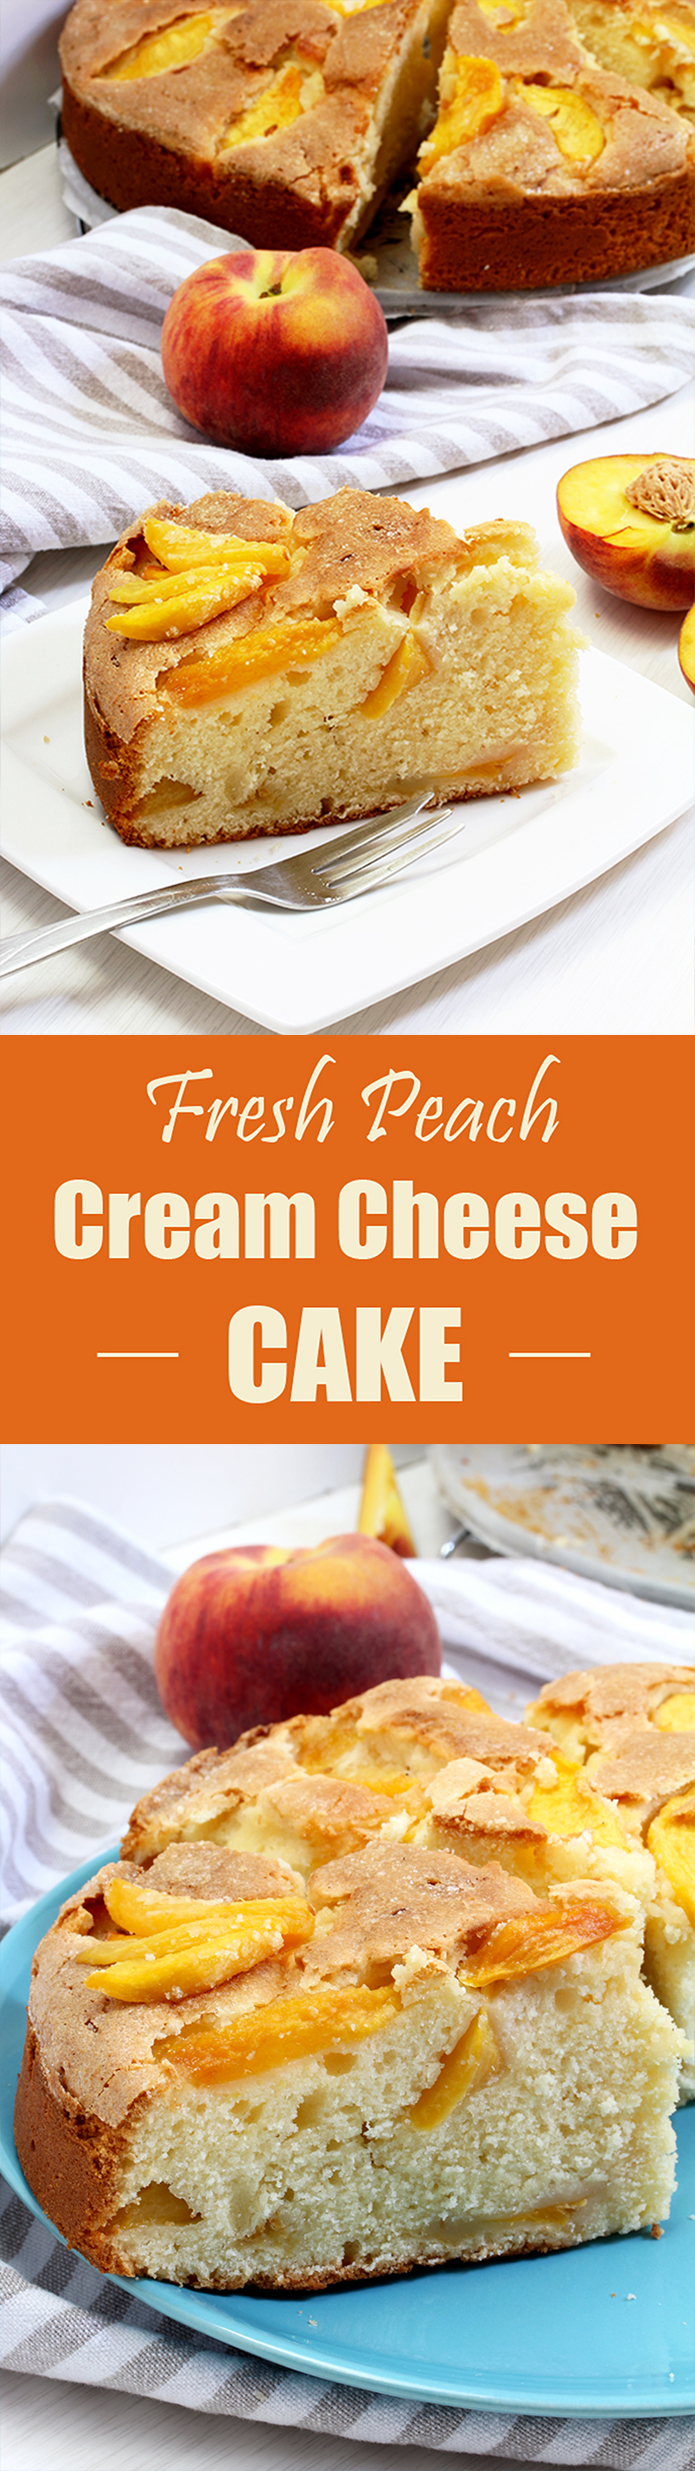 Fresh Peach Cream Cheese Cake